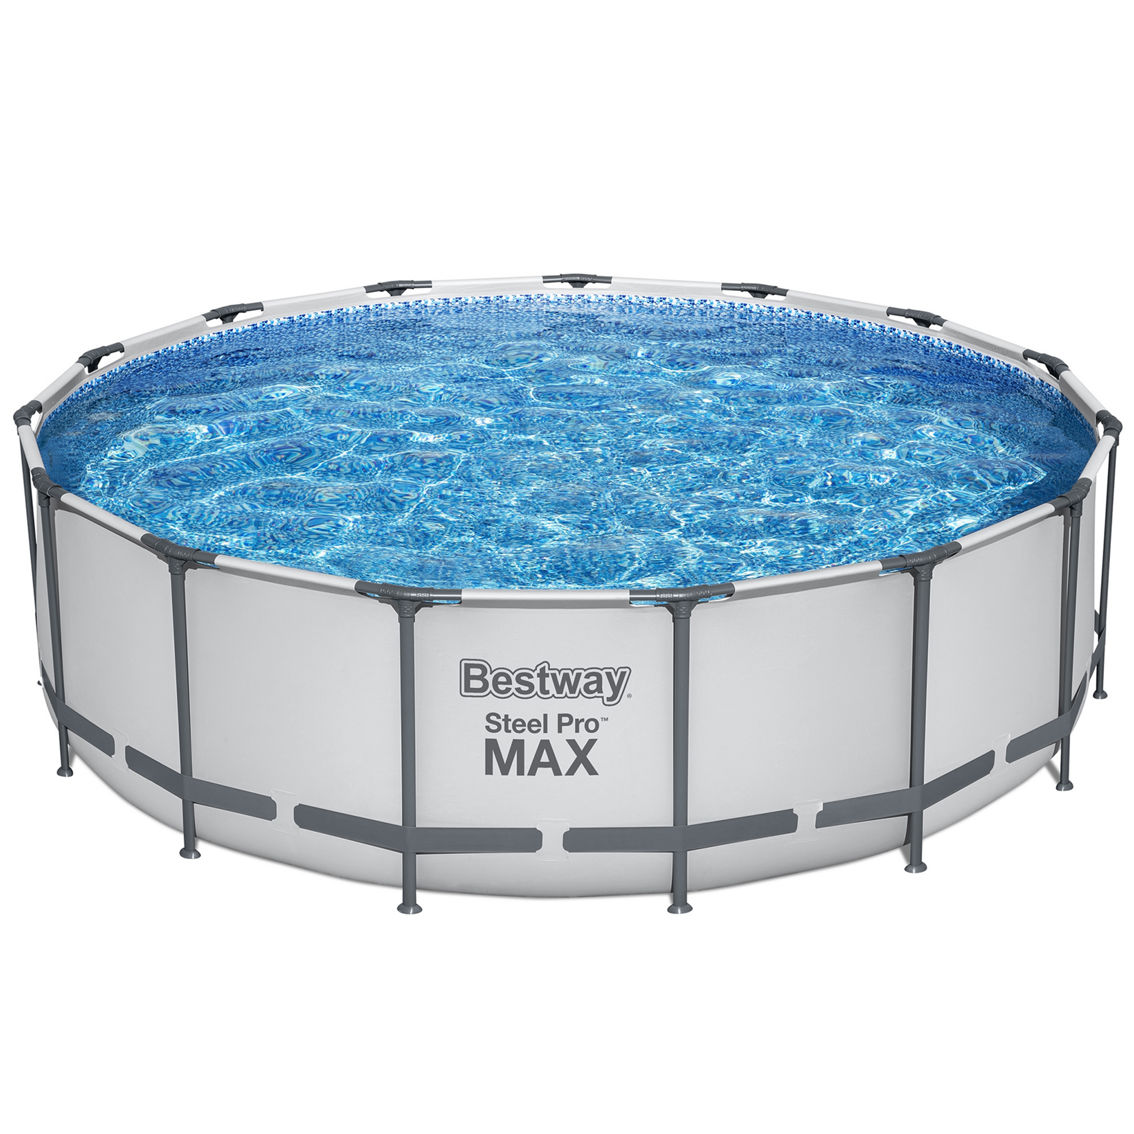 Bestway Steel Pro MAX: Pool Set - Image 3 of 9